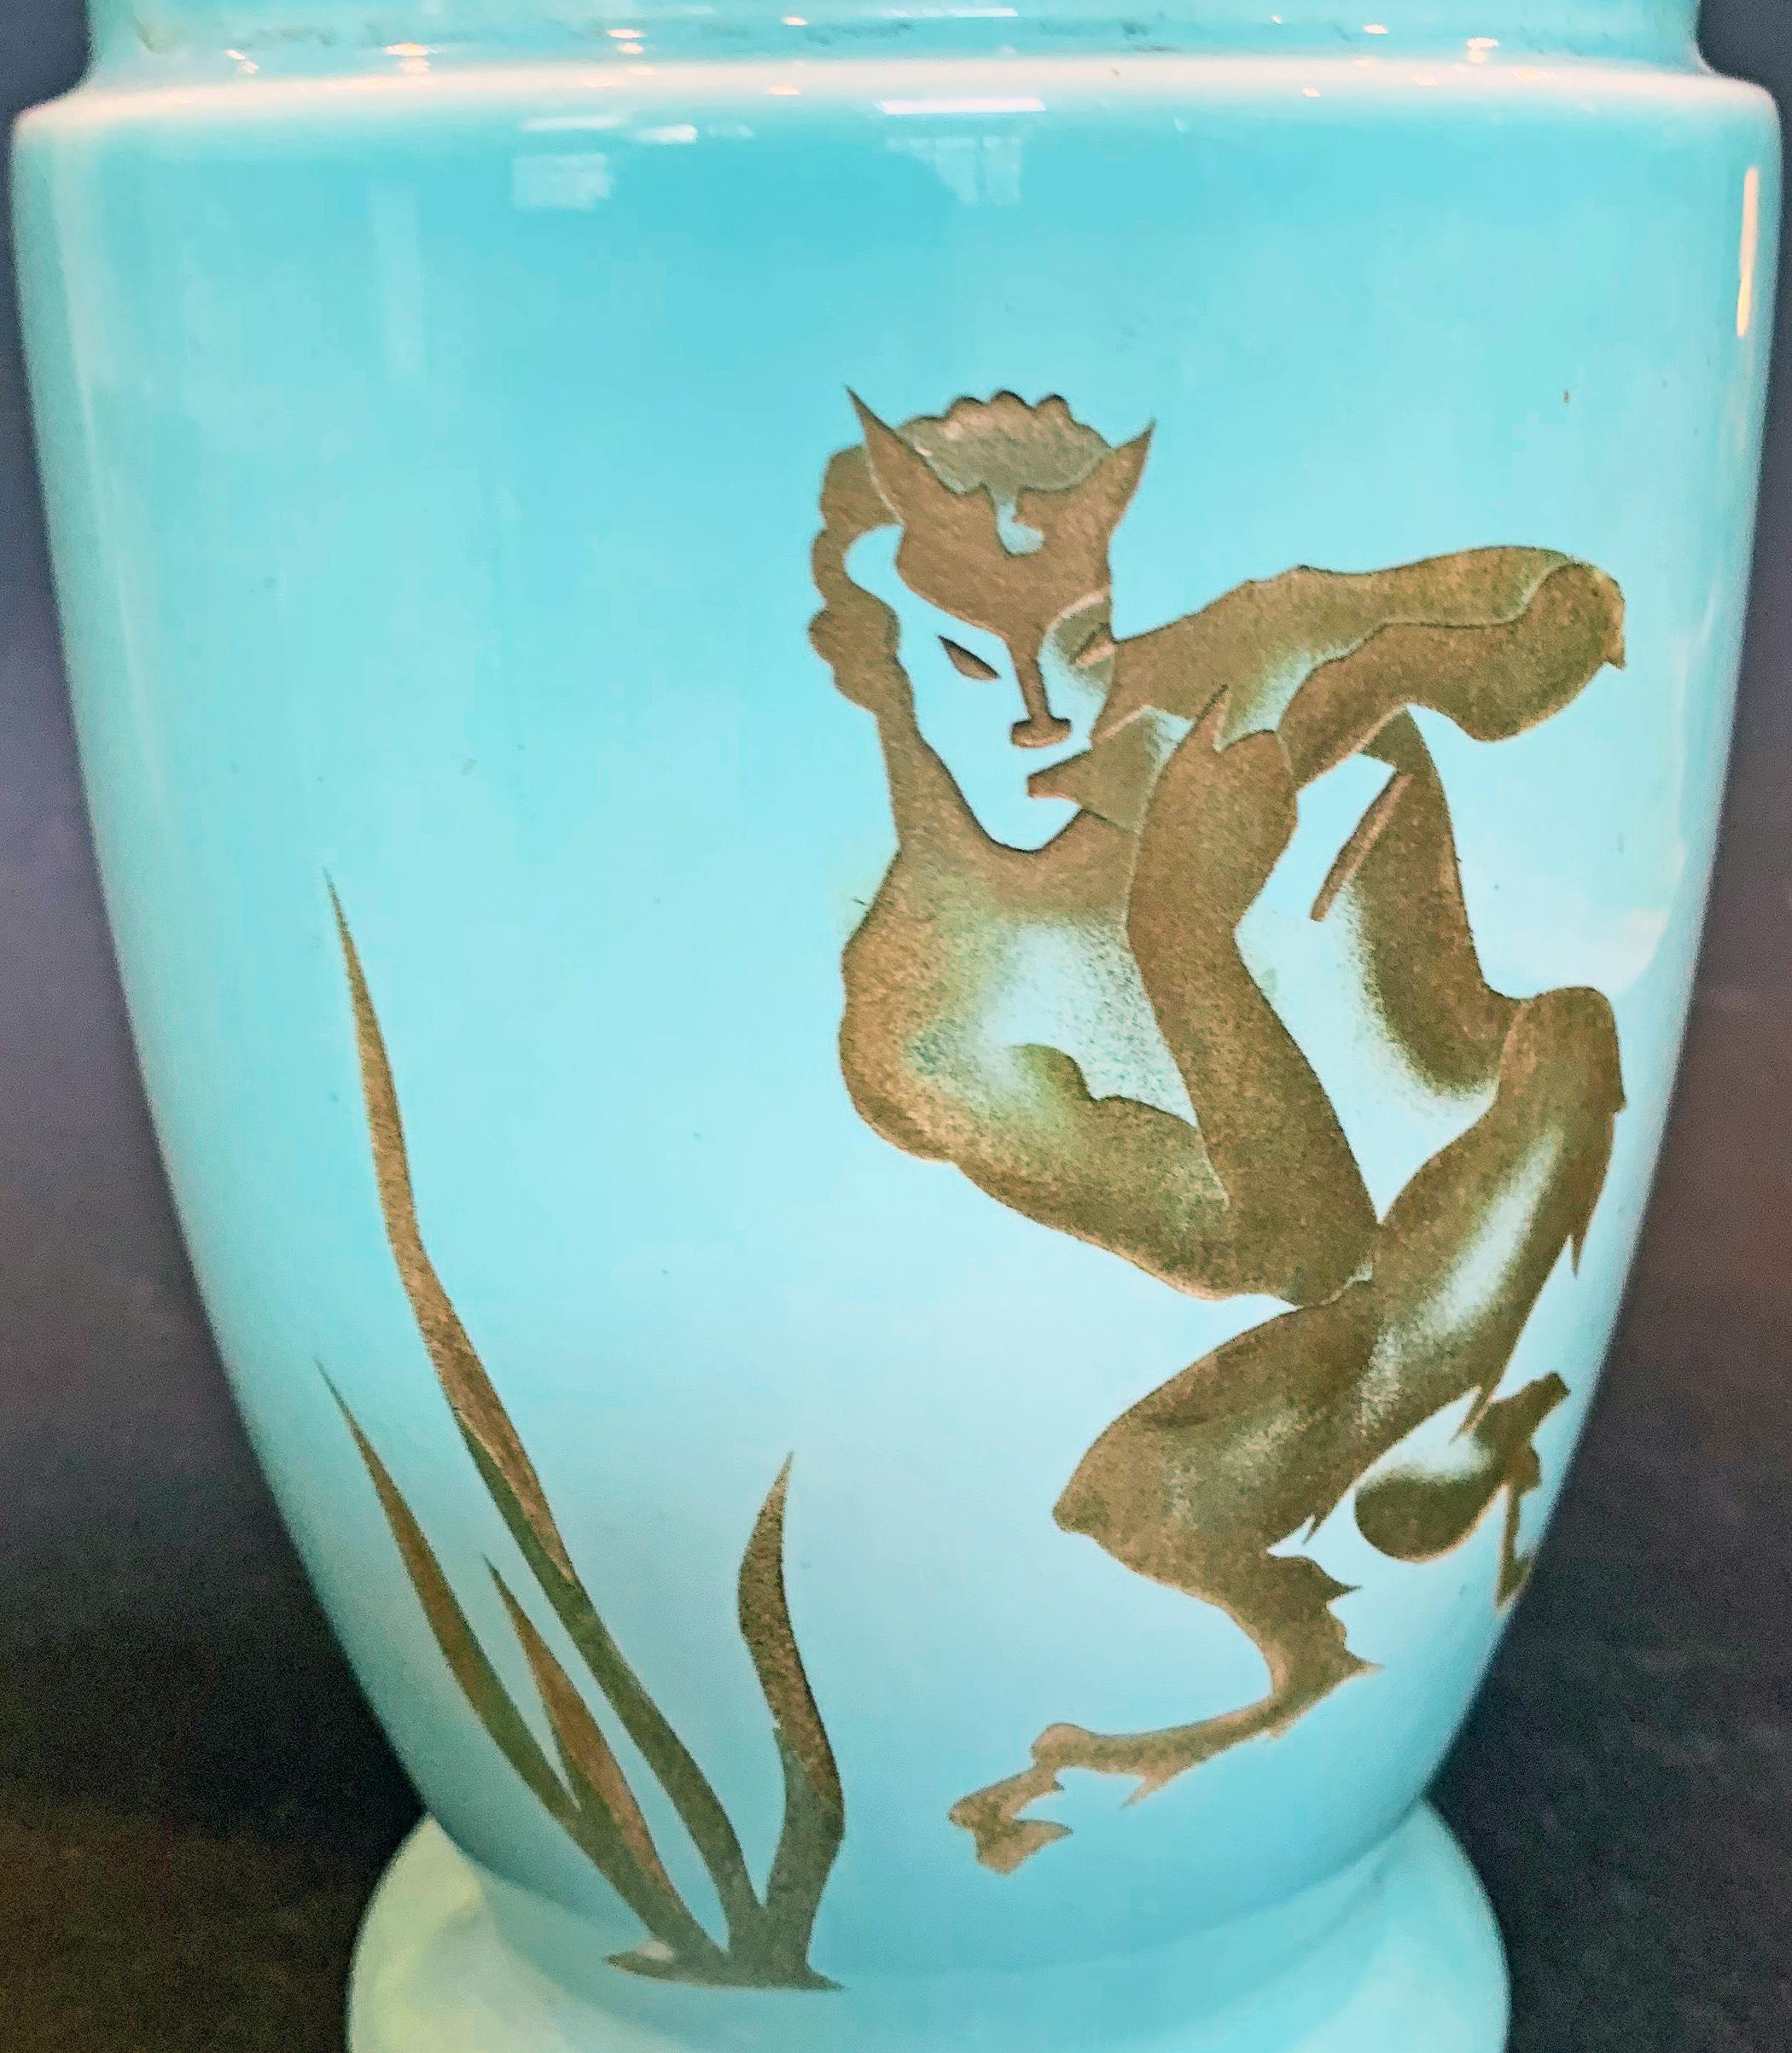 Unseres Wissens ist diese bemerkenswerte Vase, die in den 1930er Jahren von der berühmten Trenton Potteries Company hergestellt wurde, einzigartig. Ausgehend von einer einfachen blauen Keramikvase hat der Künstler eine tanzende, Panflöte spielende